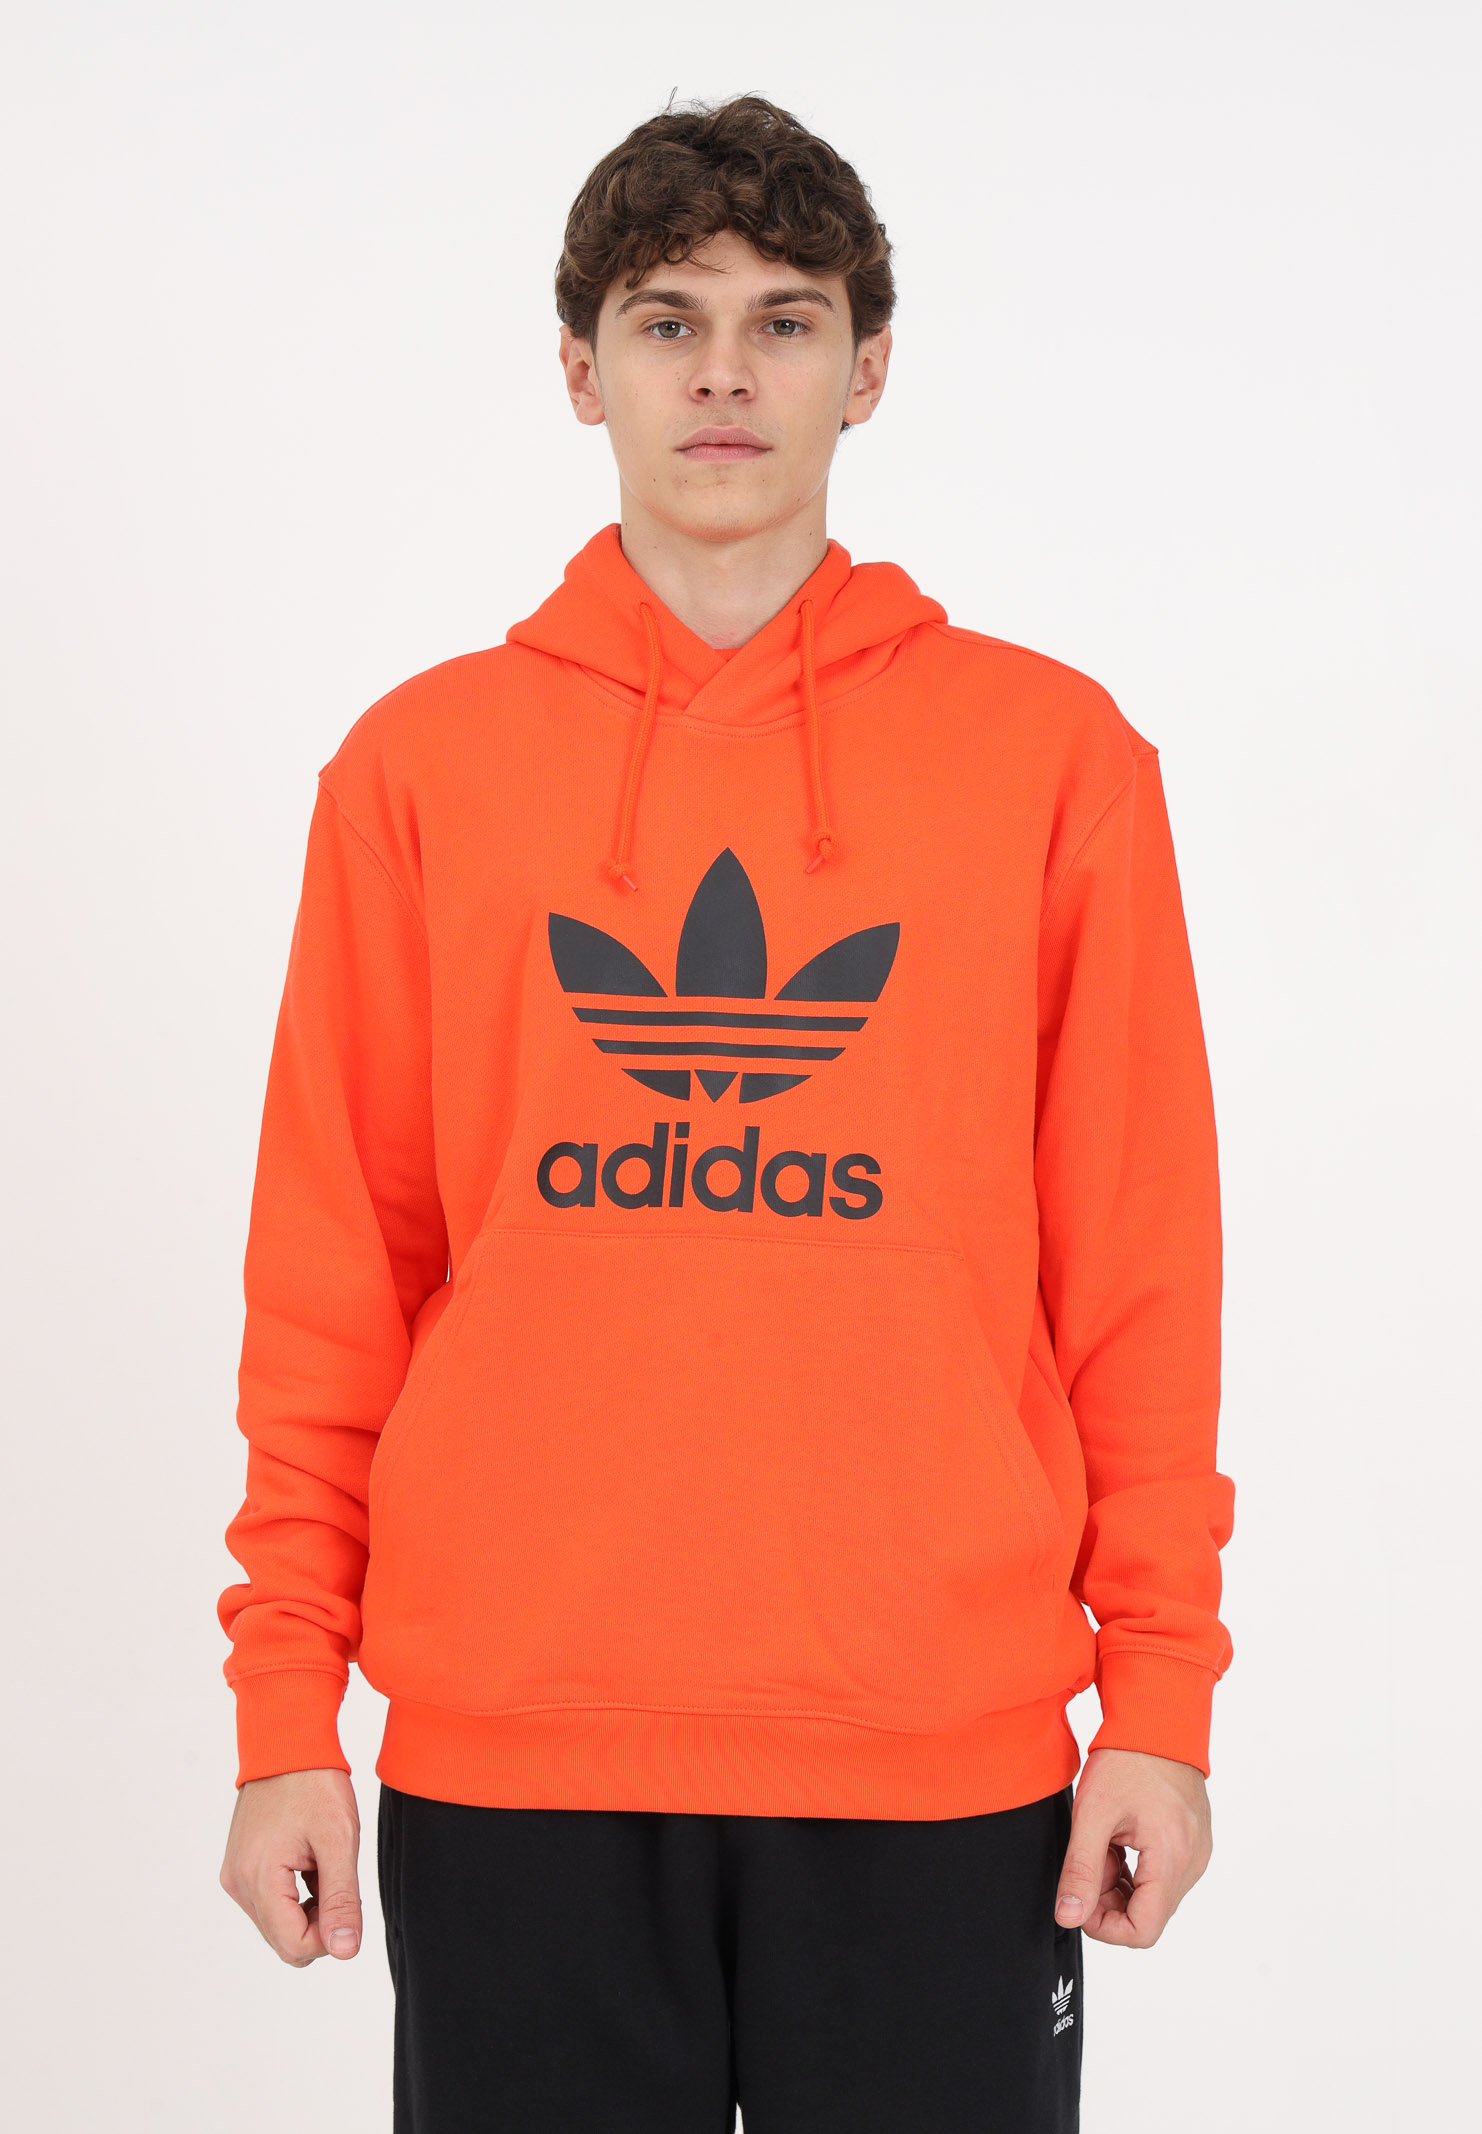 Orange hooded sweatshirt for men ADIDAS ORIGINALS | II5769.